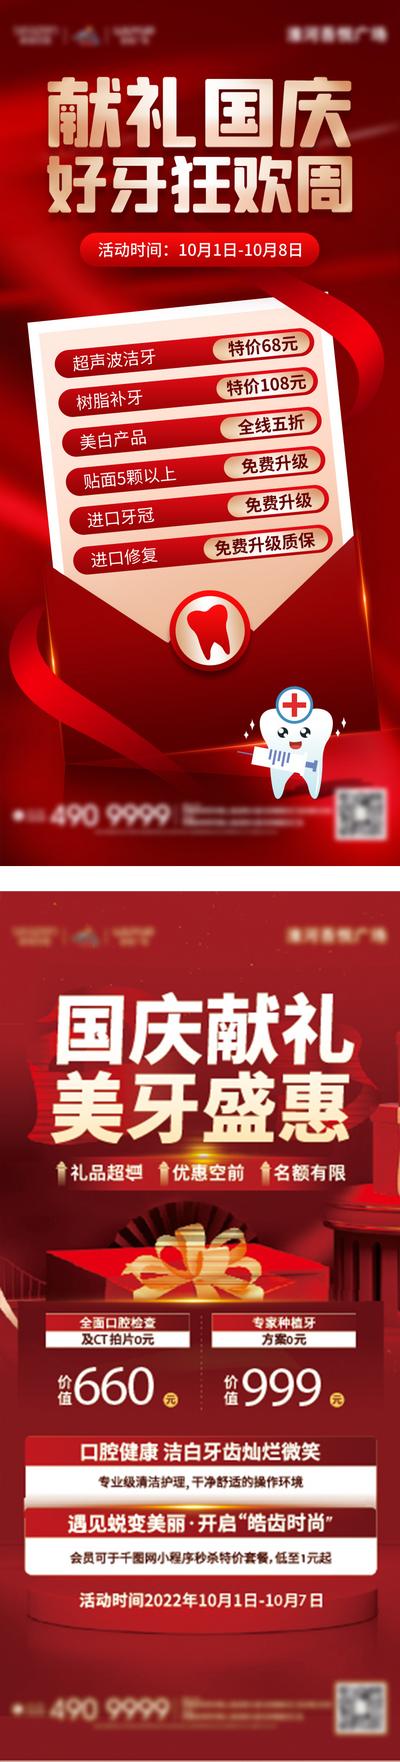 南门网 广告 海报 电商 牙科 主画面 医美 节日 质感 红金 热销